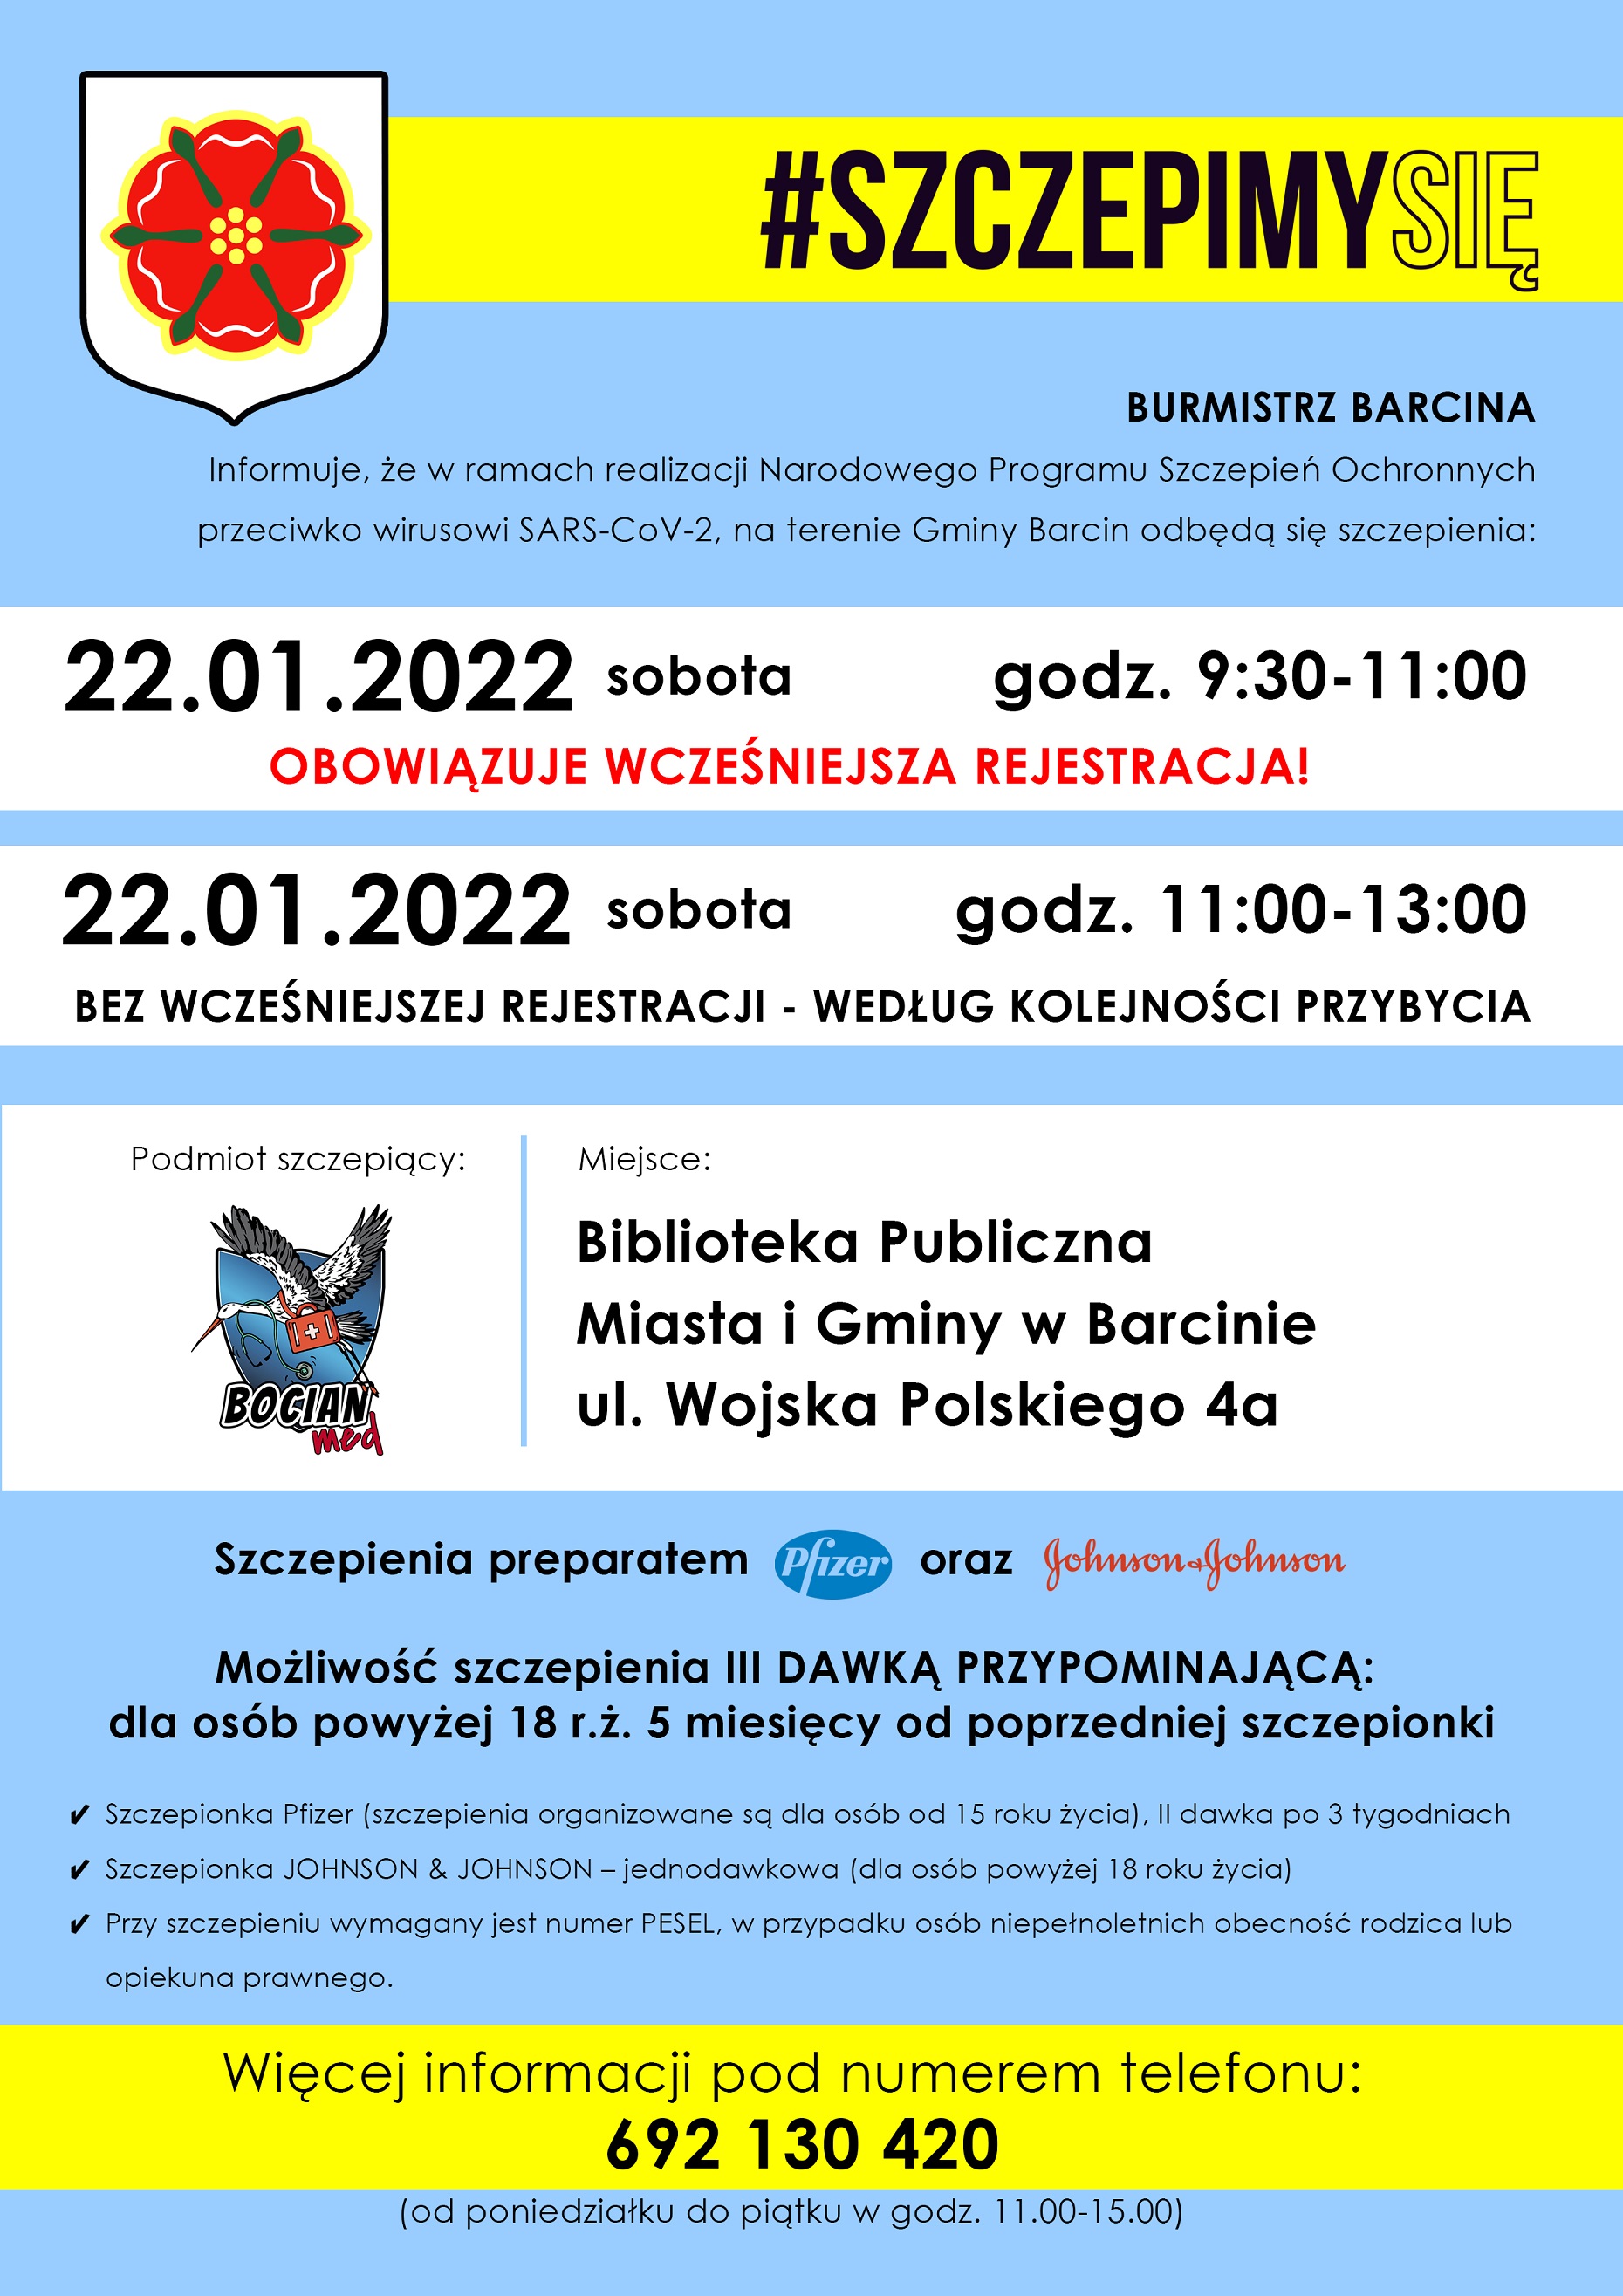 Plakat promujący szczepienia w Barcinie